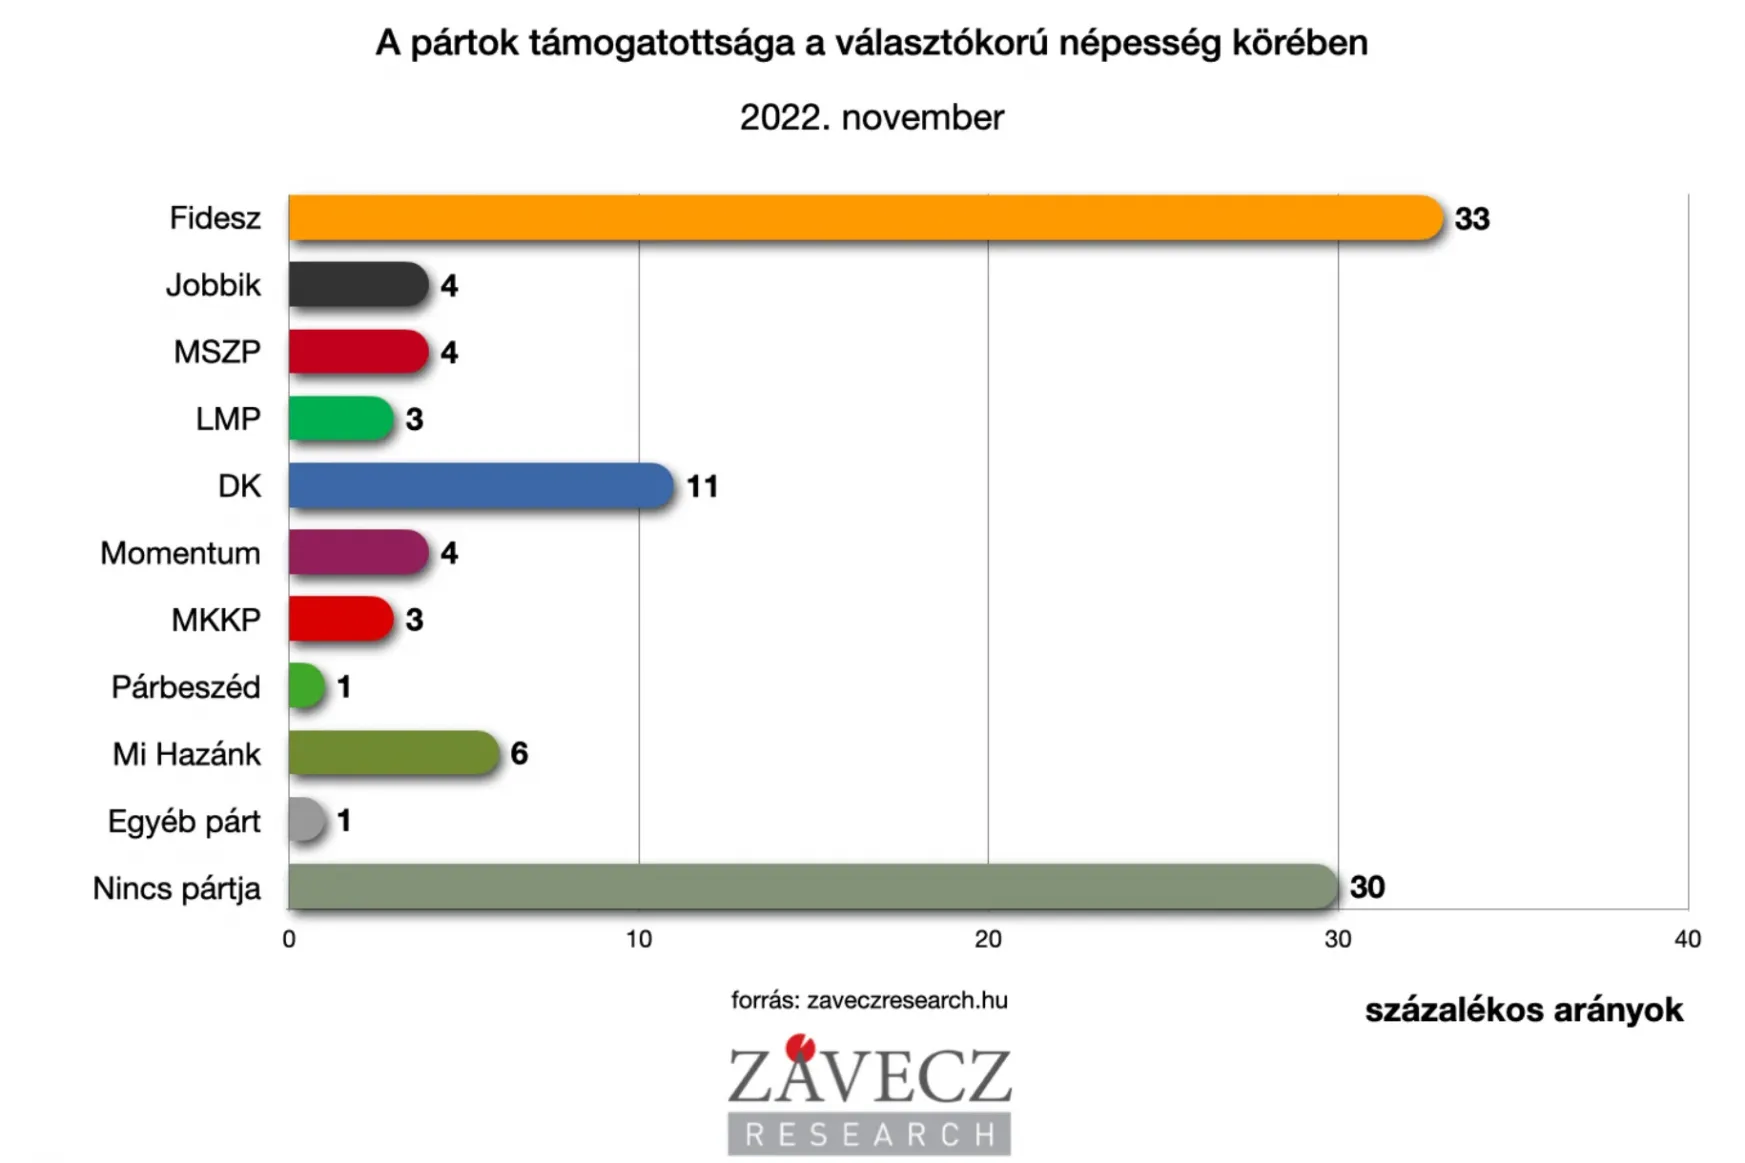 Závecz: Szeptember óta 300 ezer szavazót veszített a Fidesz, de az ellenzék alig erősödött